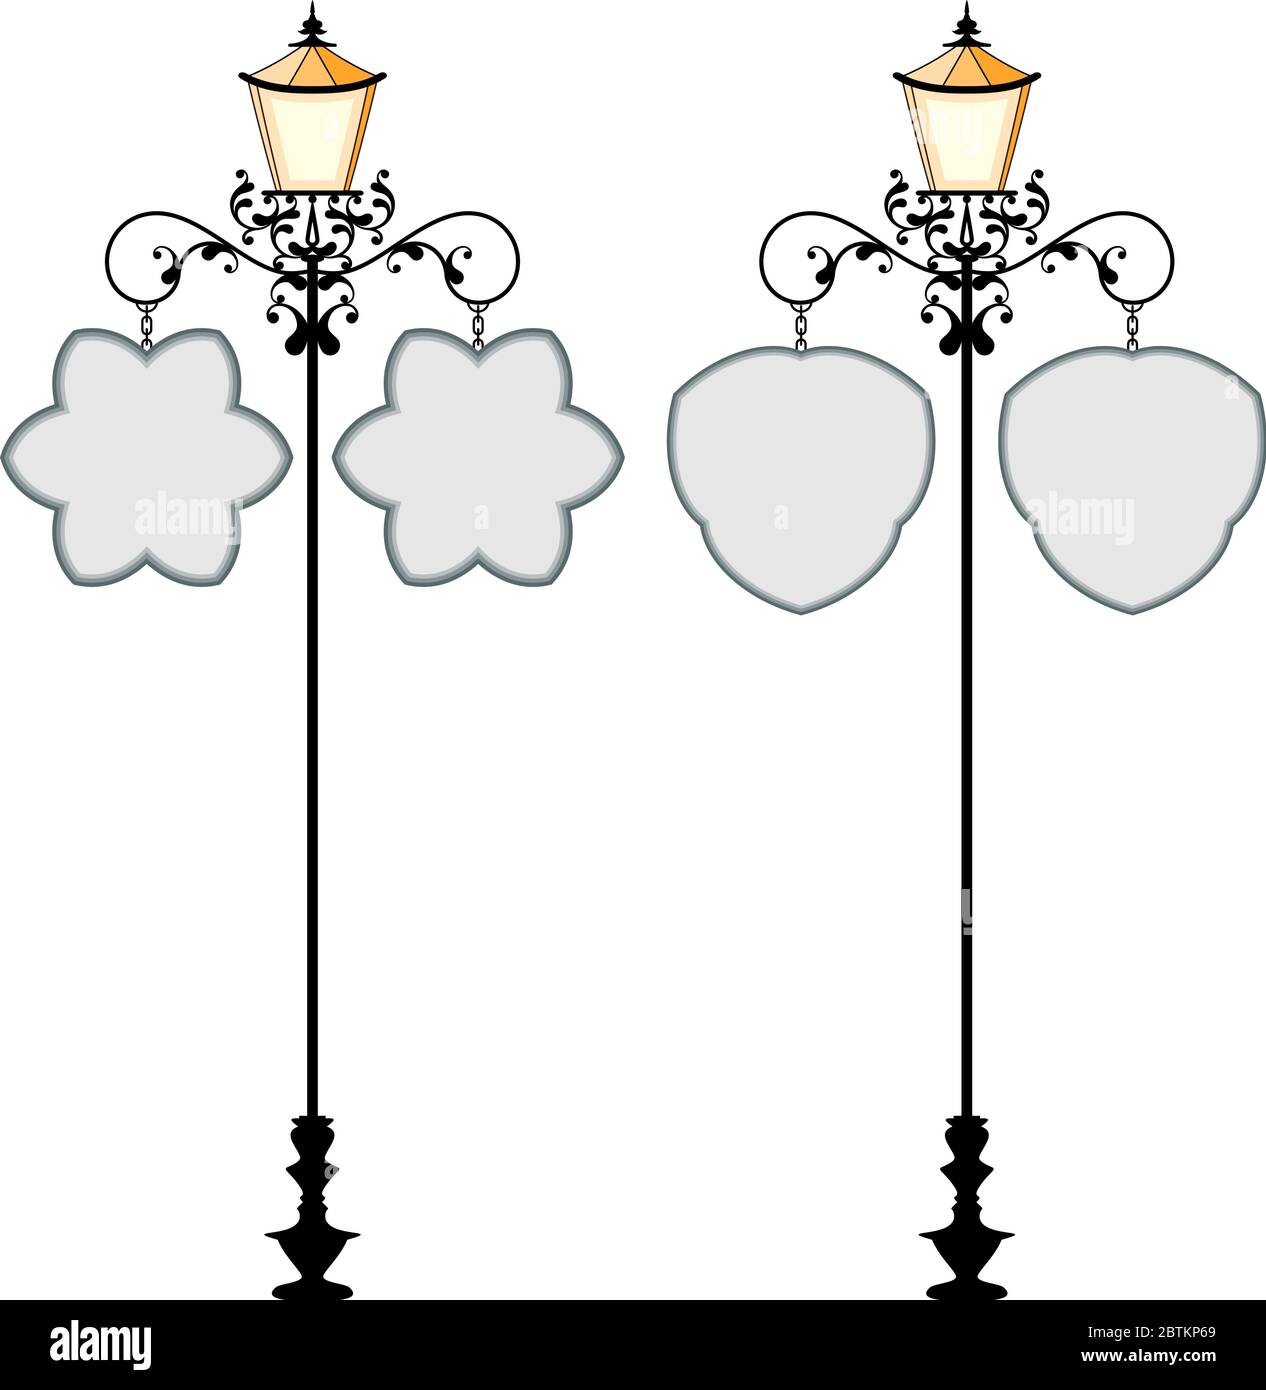 Signalisation en fer forgé avec lampe, illustration vectorielle de lanterne Illustration de Vecteur